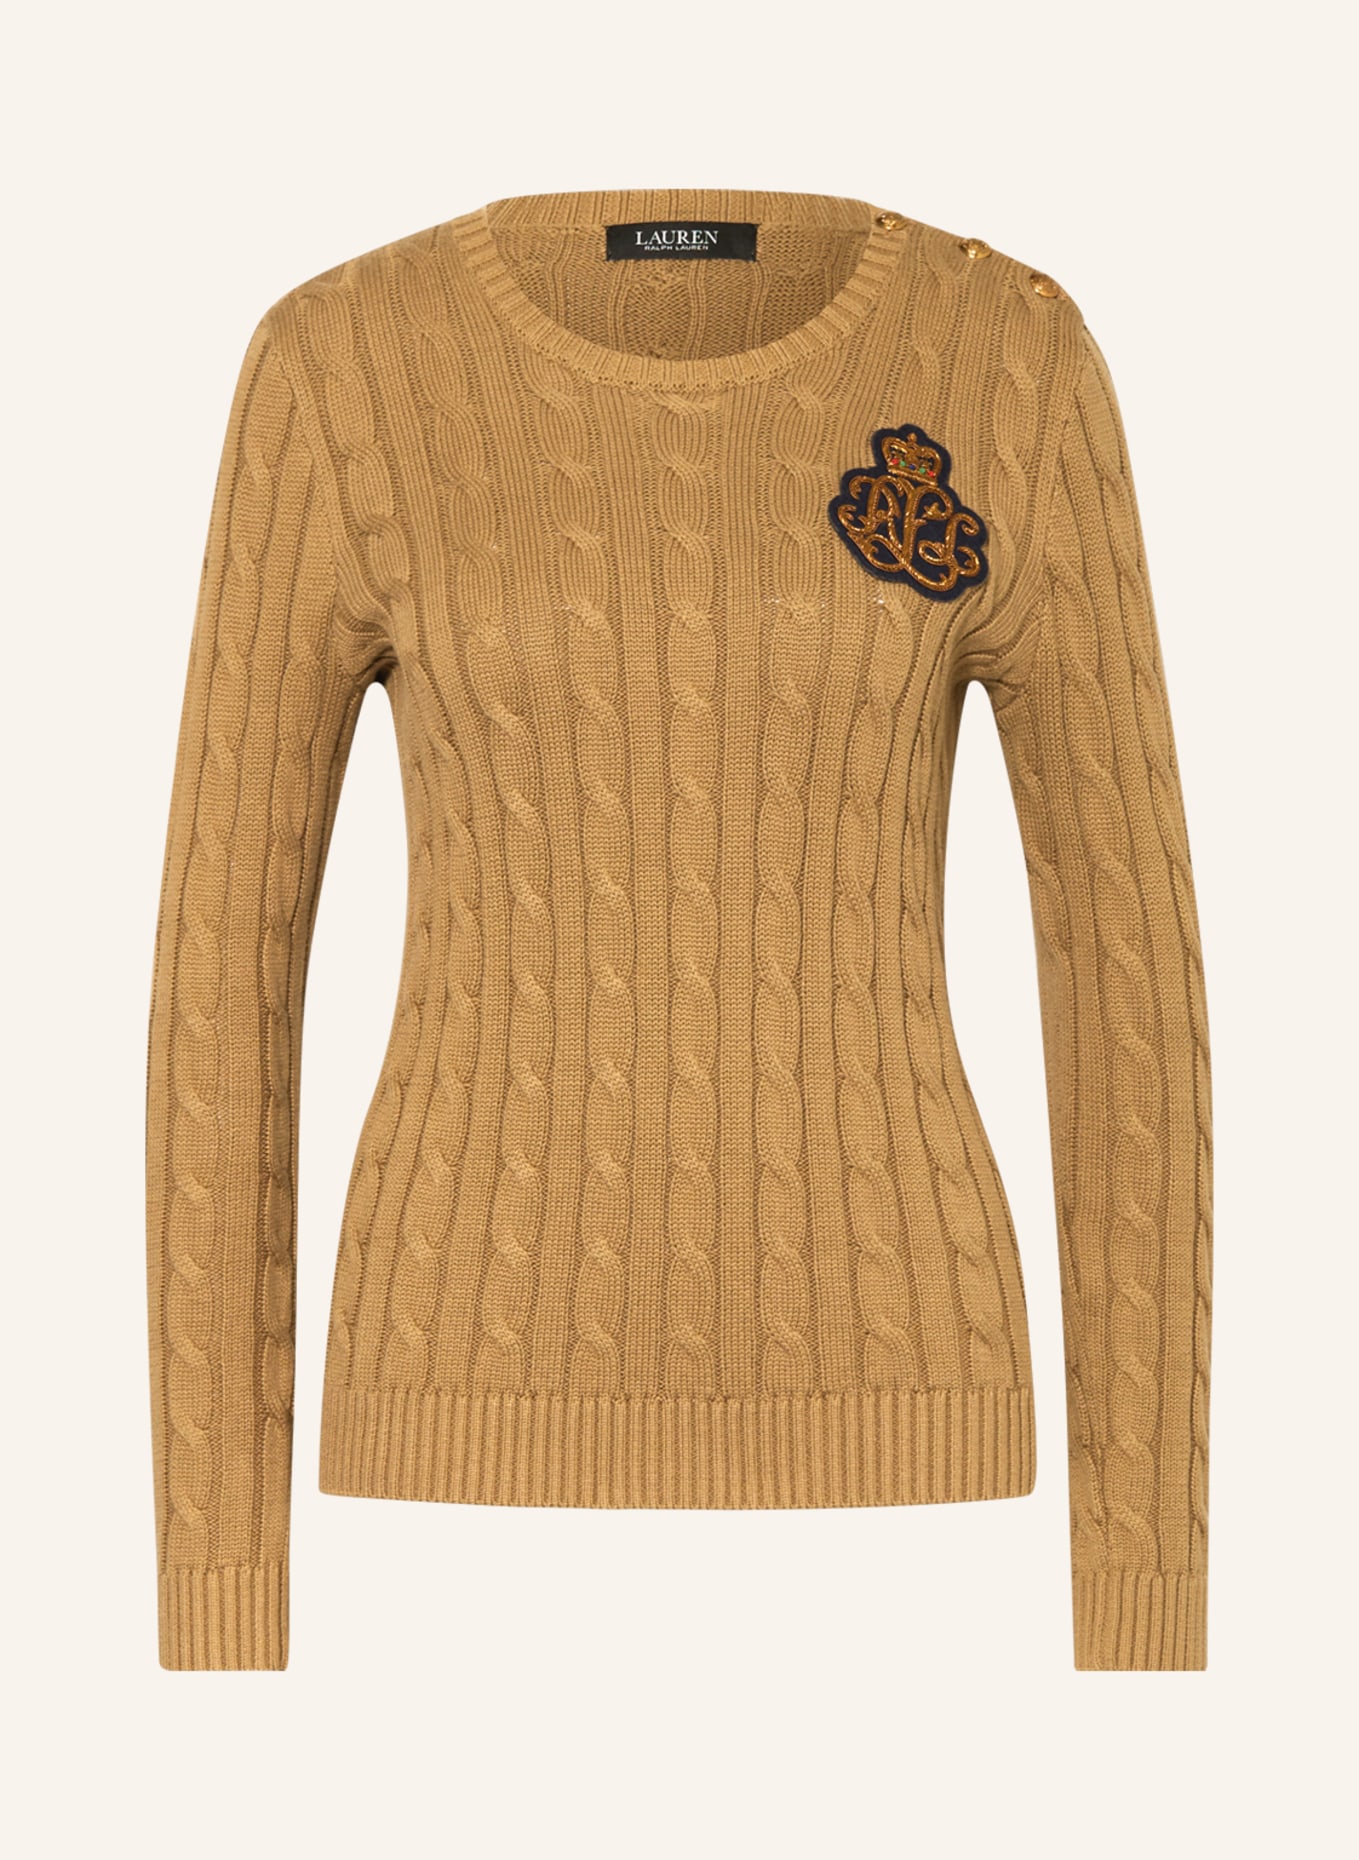 LAUREN RALPH LAUREN Sweater, Color: BROWN (Image 1)